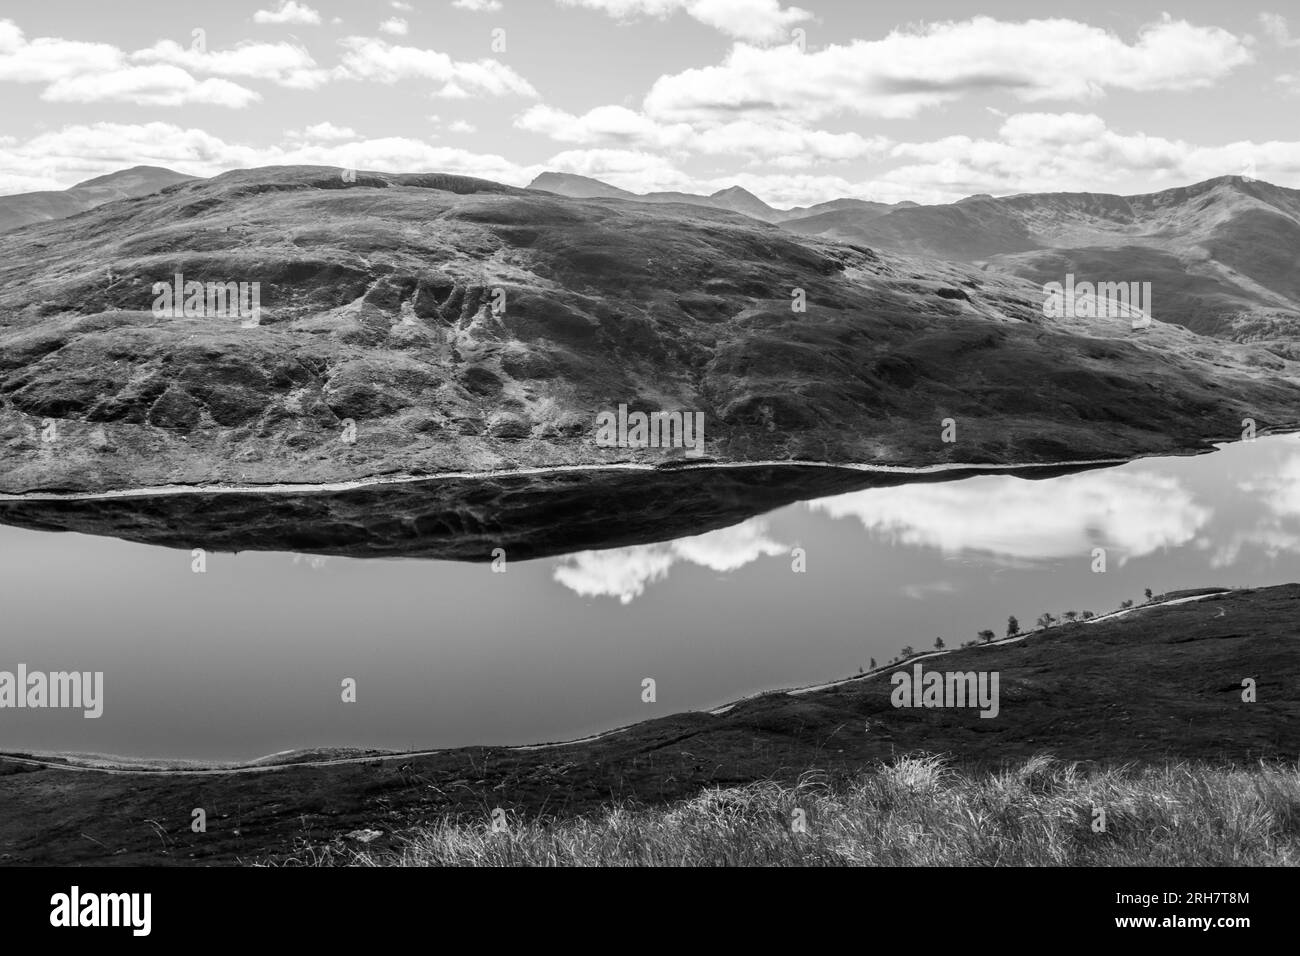 Vue sur le loch et les montagnes dans les hautes terres de Scotlands en noir et blanc Banque D'Images